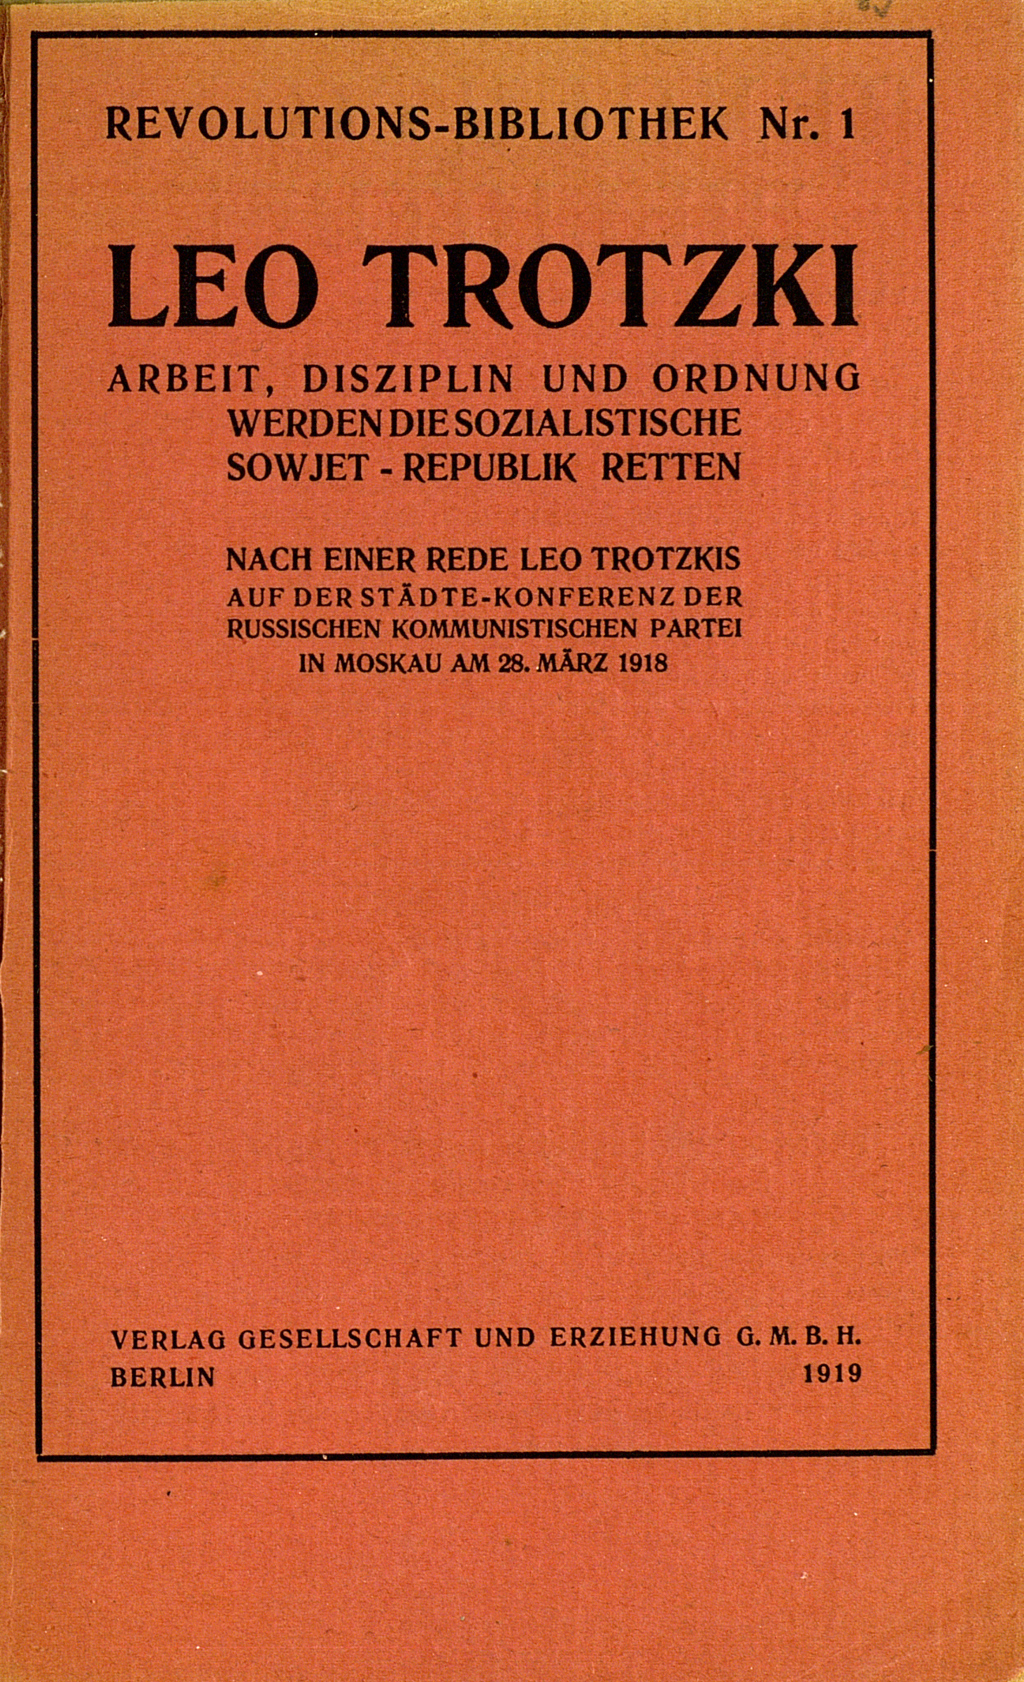 Der Umcshlag der Veröffentlichung von Leo Trotzki ist rot eingefärbt.